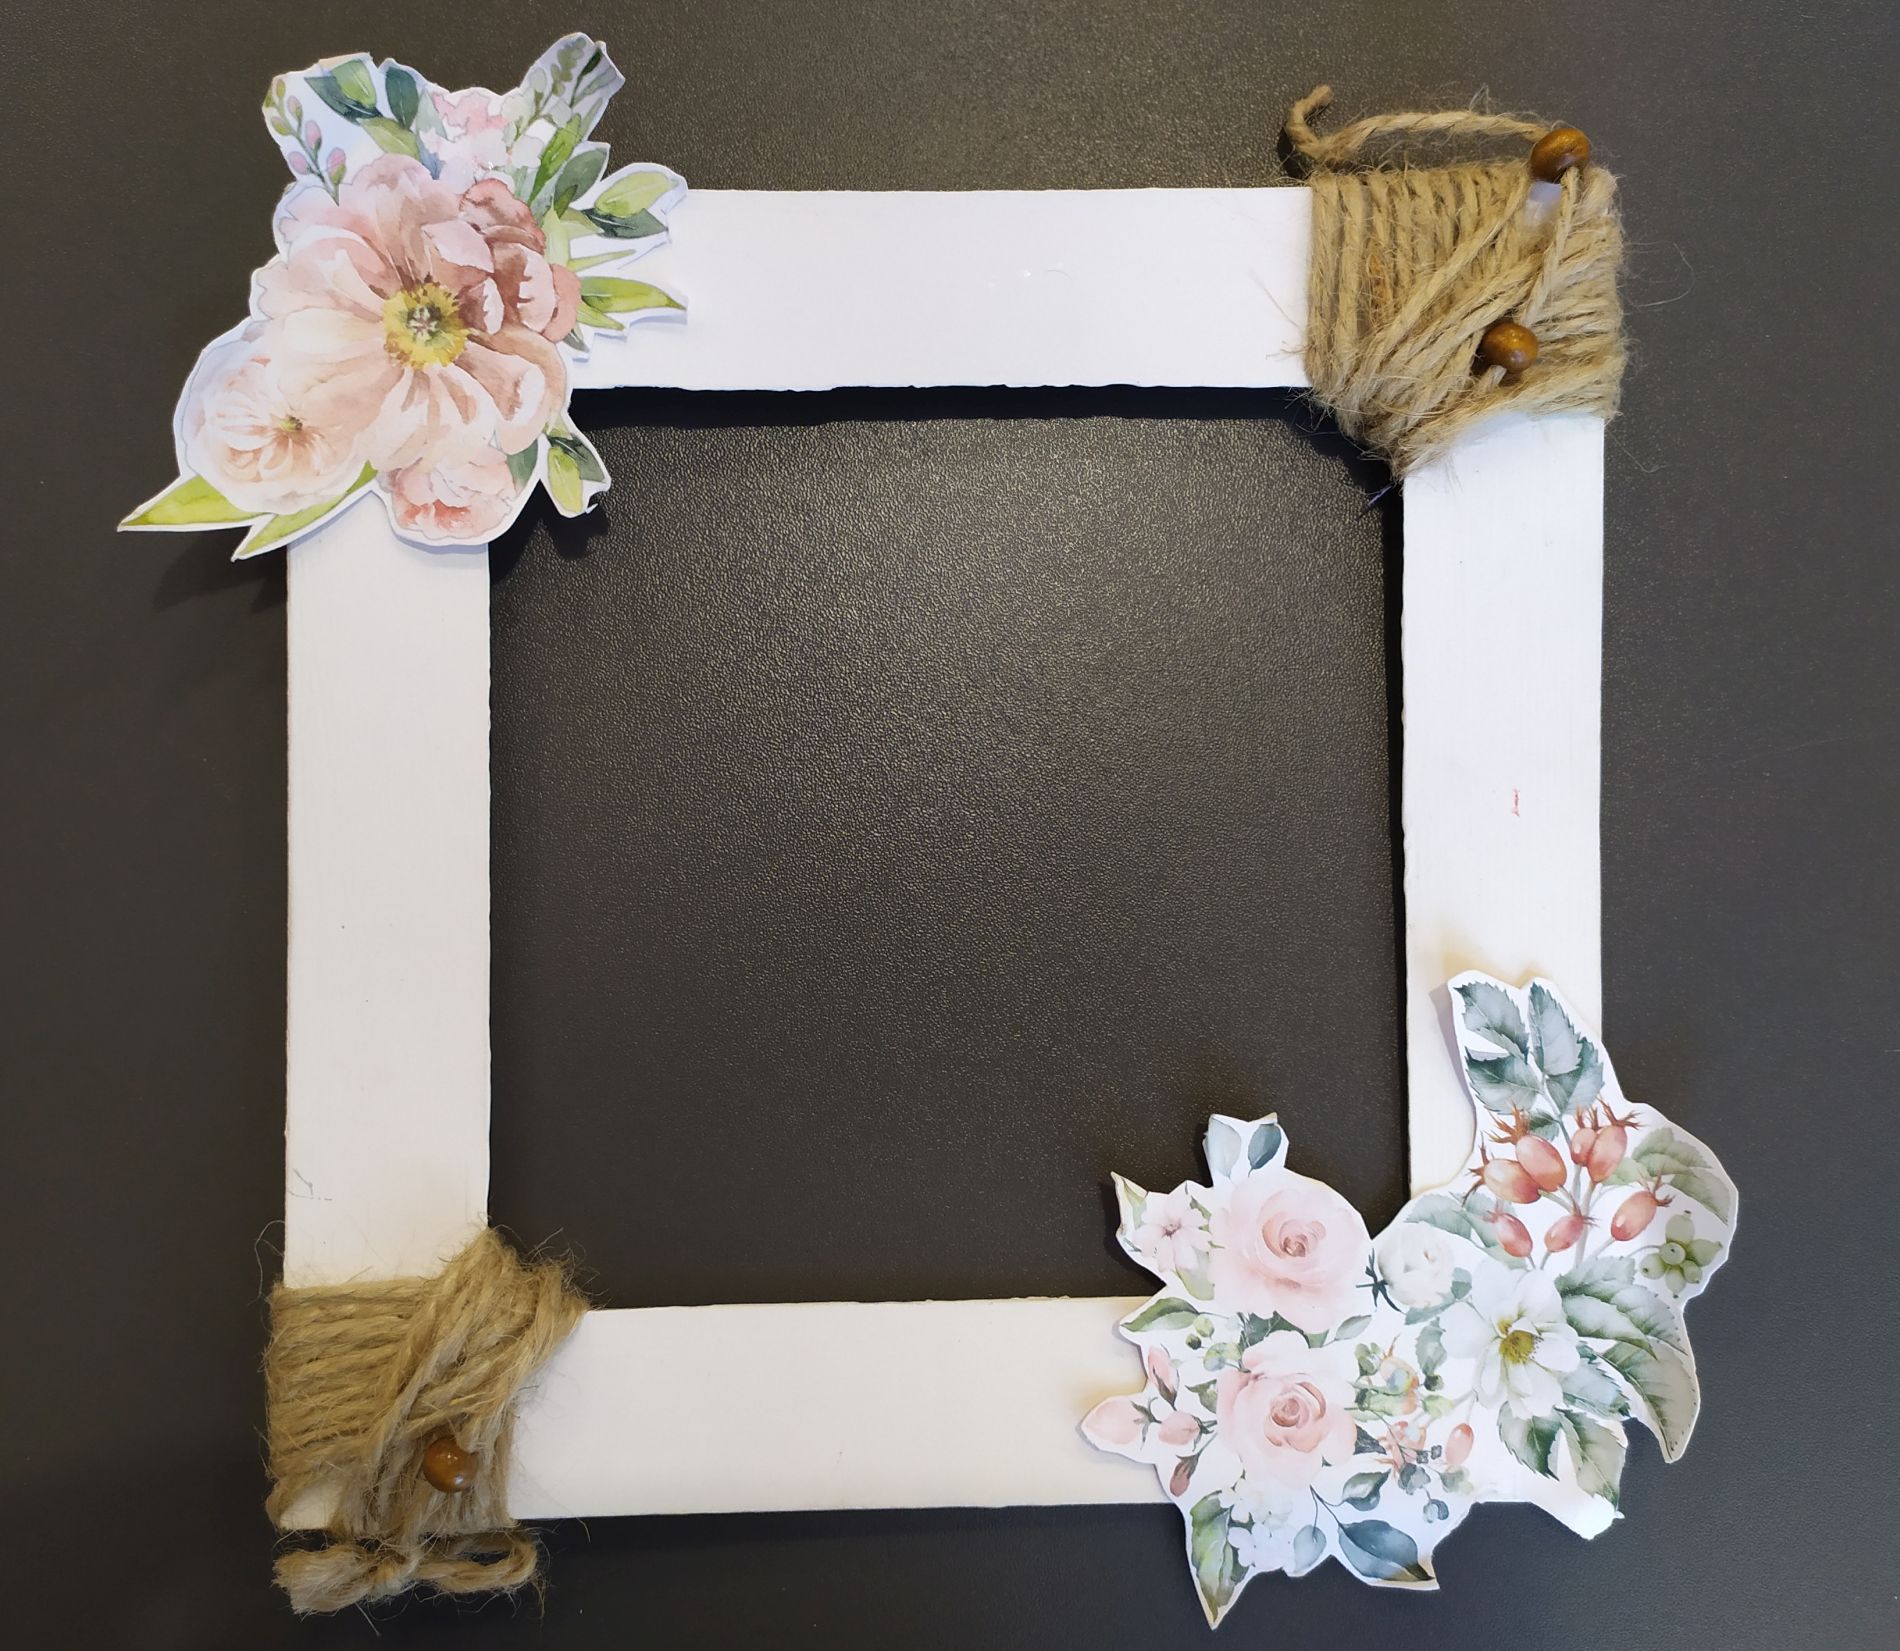 kartonowa ramka na zdjęcie pomalowana na biało i ozdobiona papierowymi kwiatami i sznurkiem